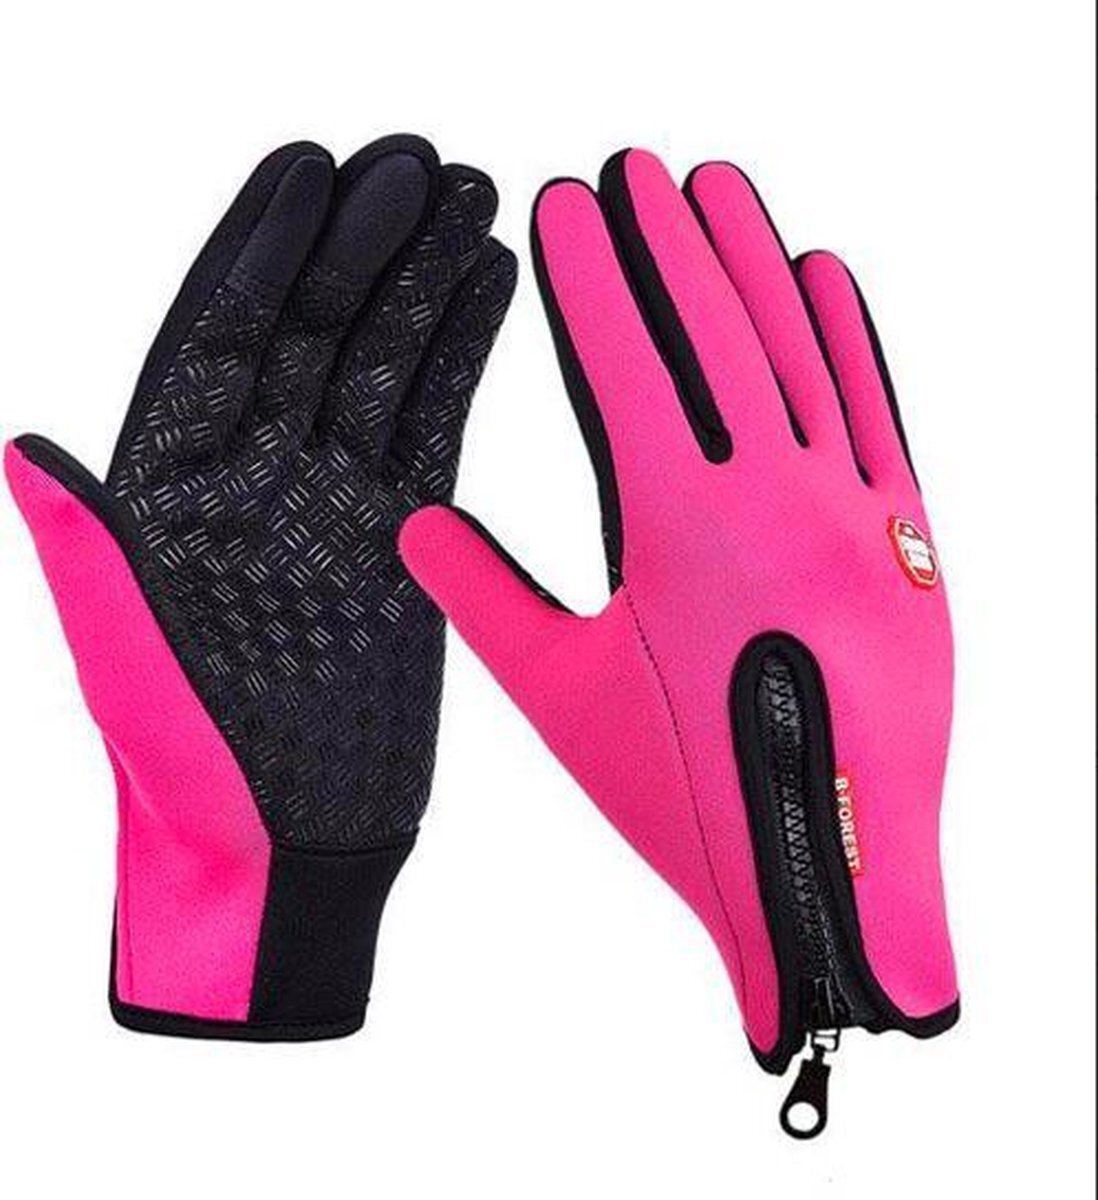 Chimb Winter handschoenen - Fietshandschoenen - Winddicht - Waterproof - Maat XL - Roze